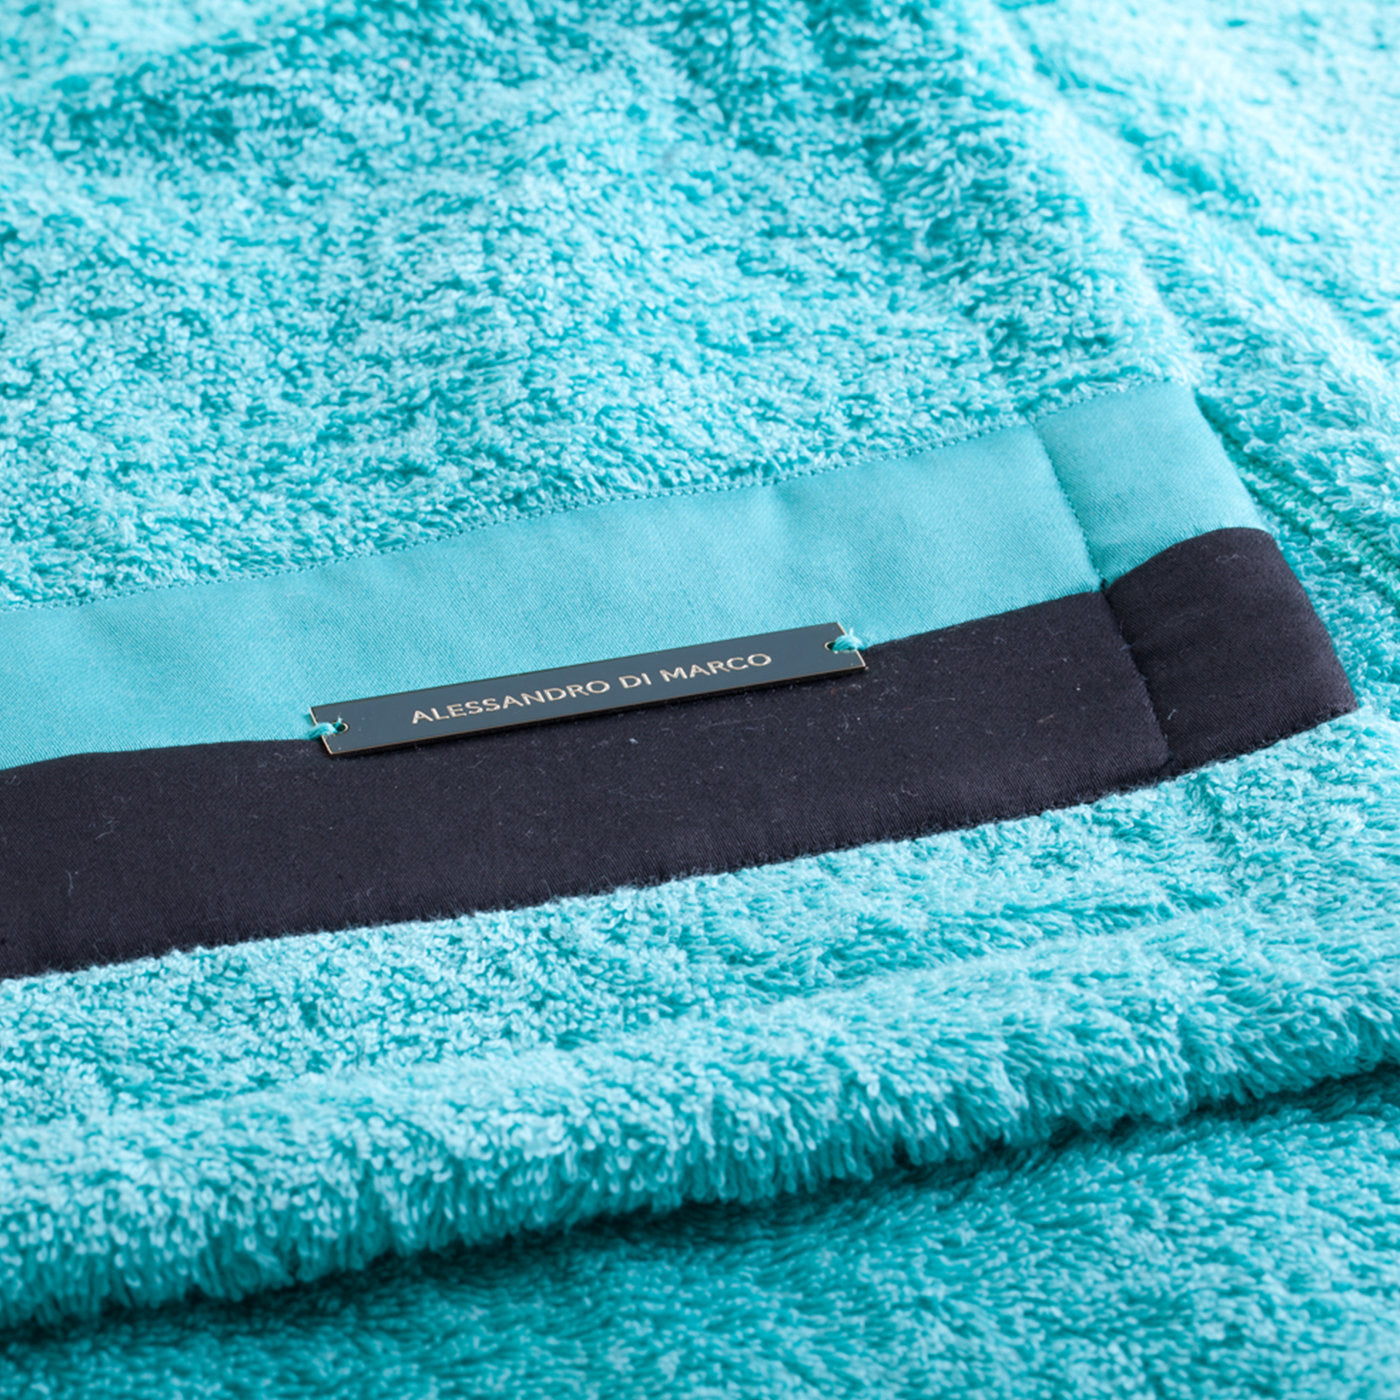 Juego de toallas de baño grandes - verde azulado y negro - Vista alternativa 1